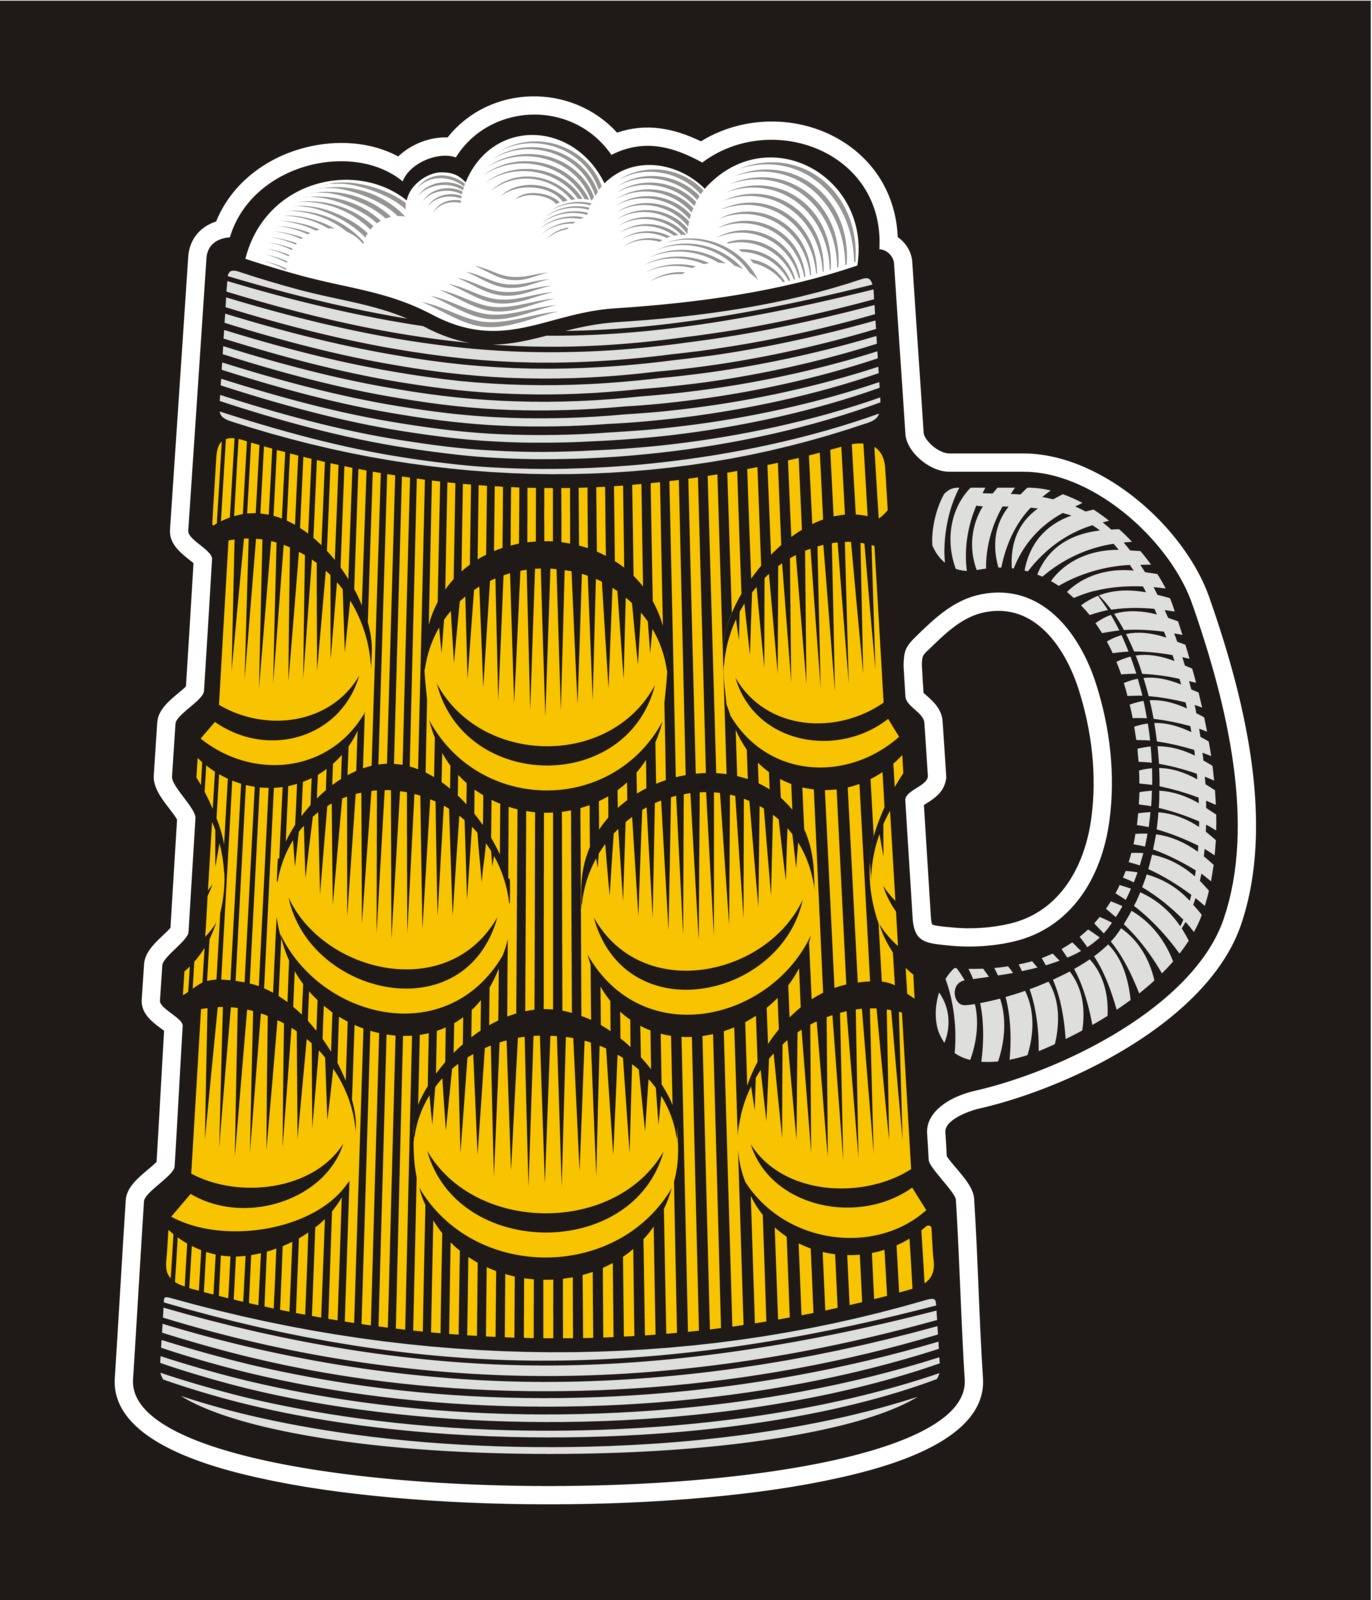 Beer mug illustration with woodcut shading on black background.